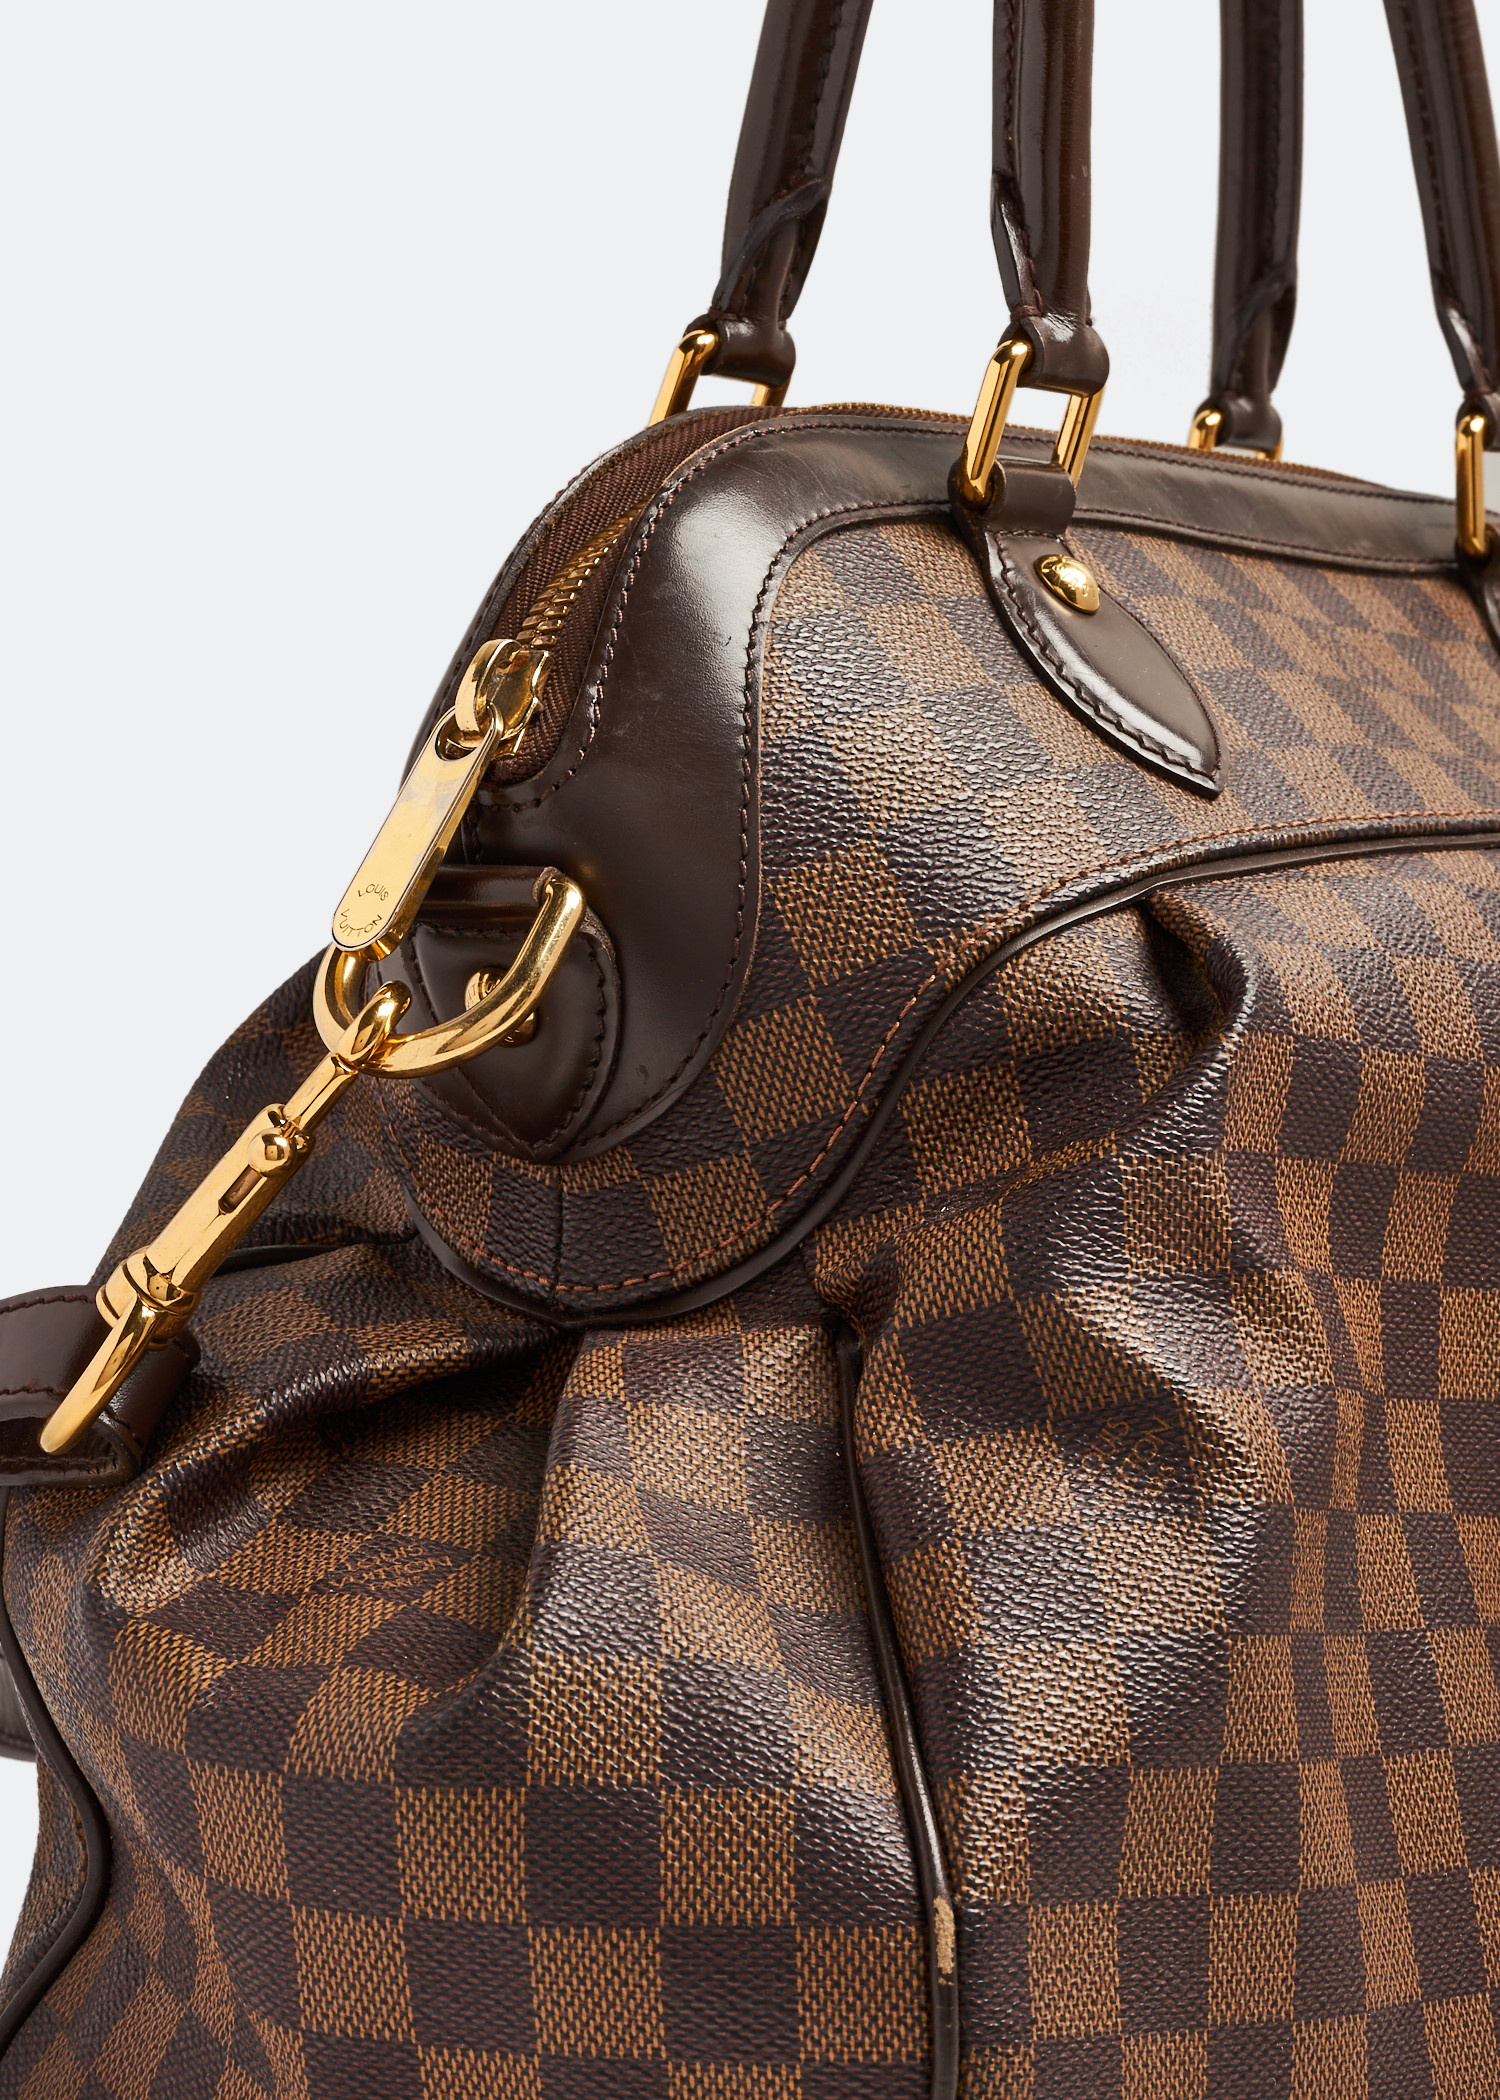 Louis Vuitton, Bags, Trevi Gm